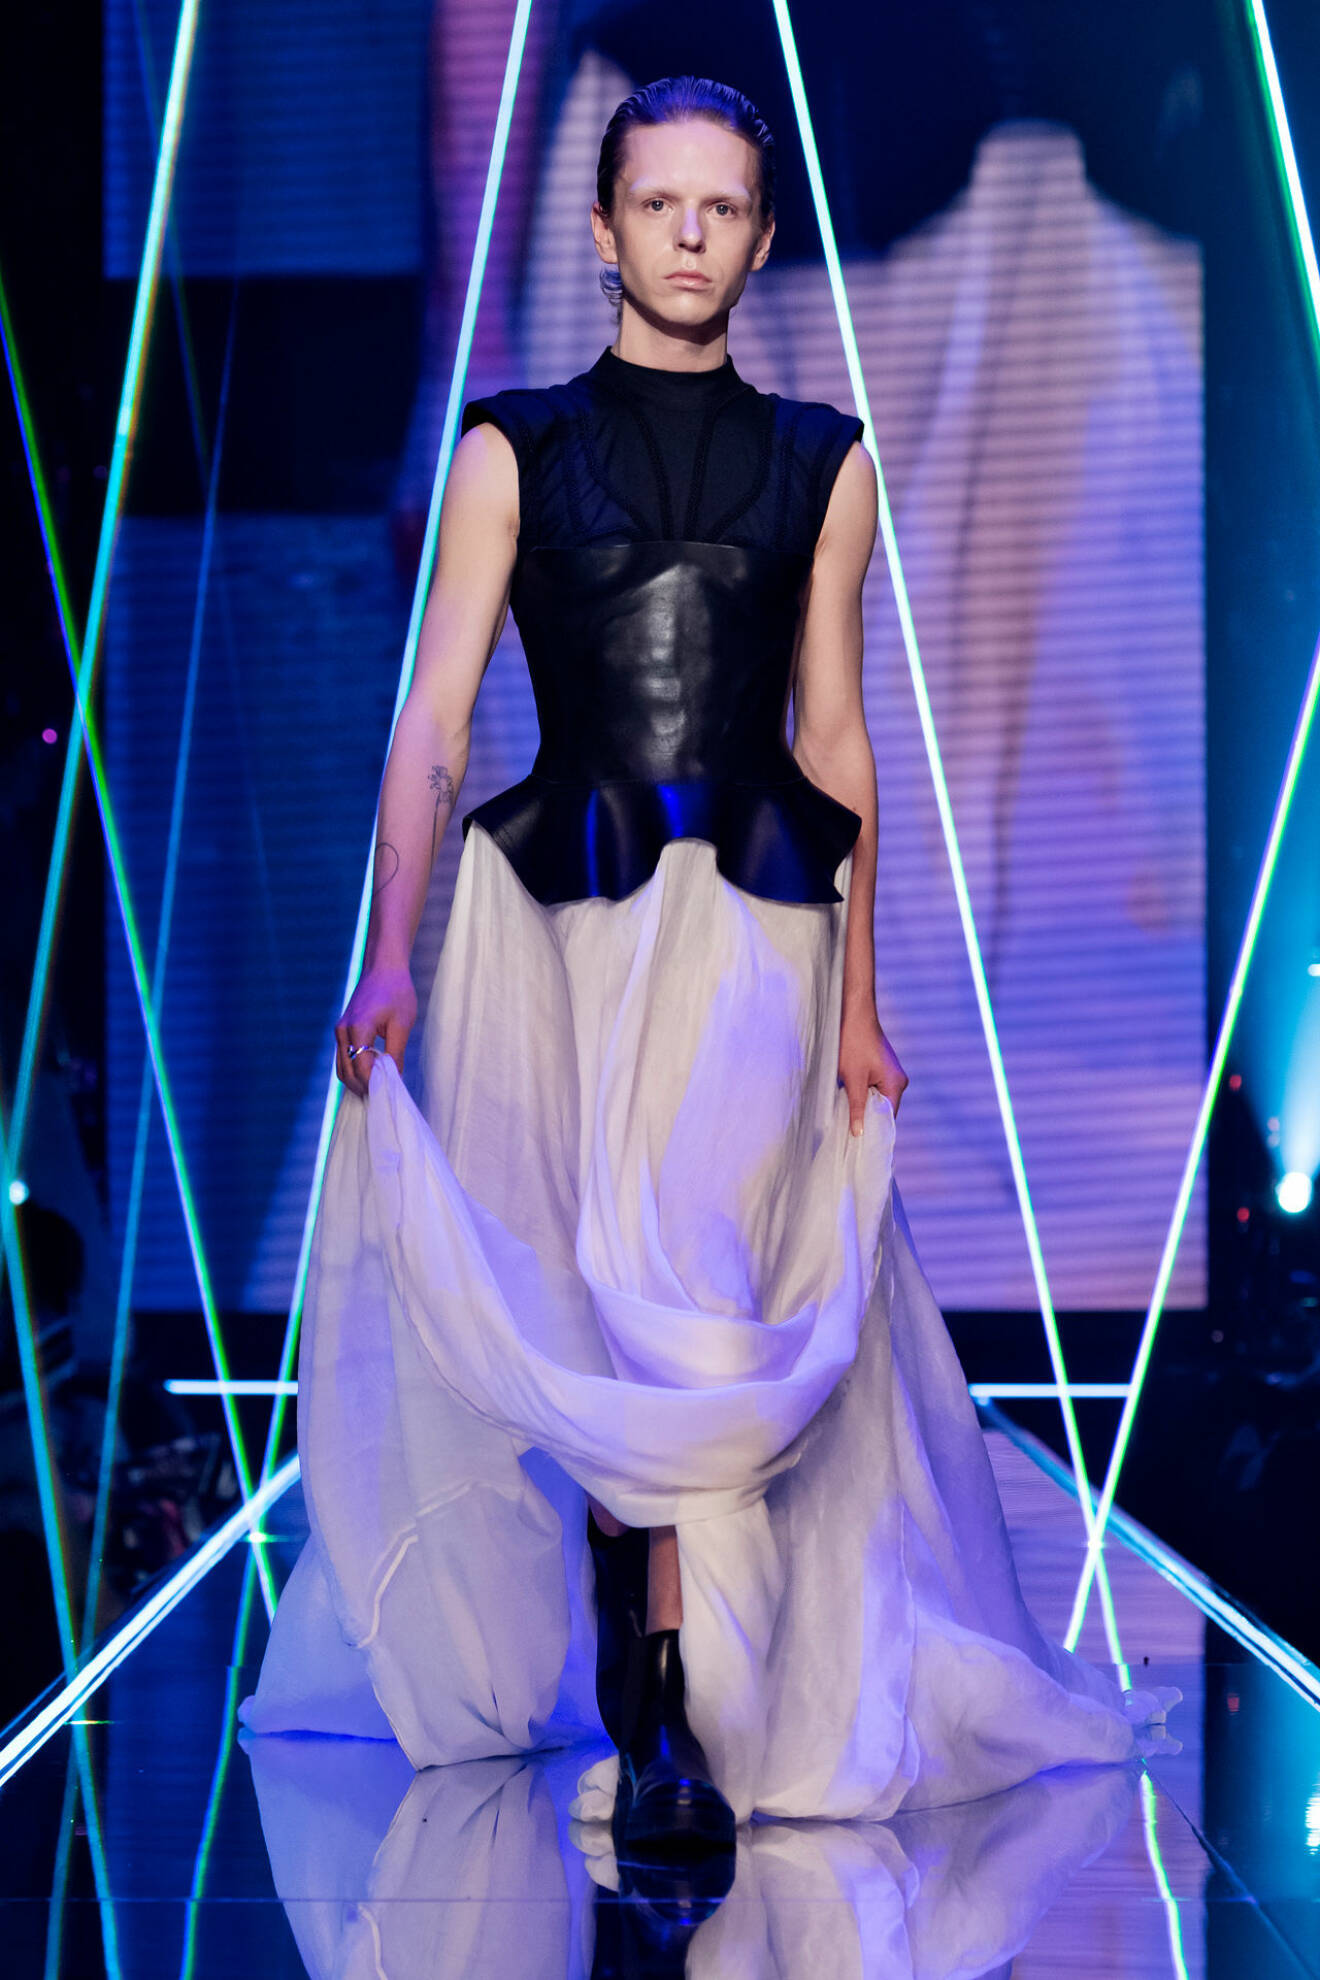 Skulptural svart överdel och vit fyllig kjol från visningen av årets nykomling Amanda Borgfors Mészáros.